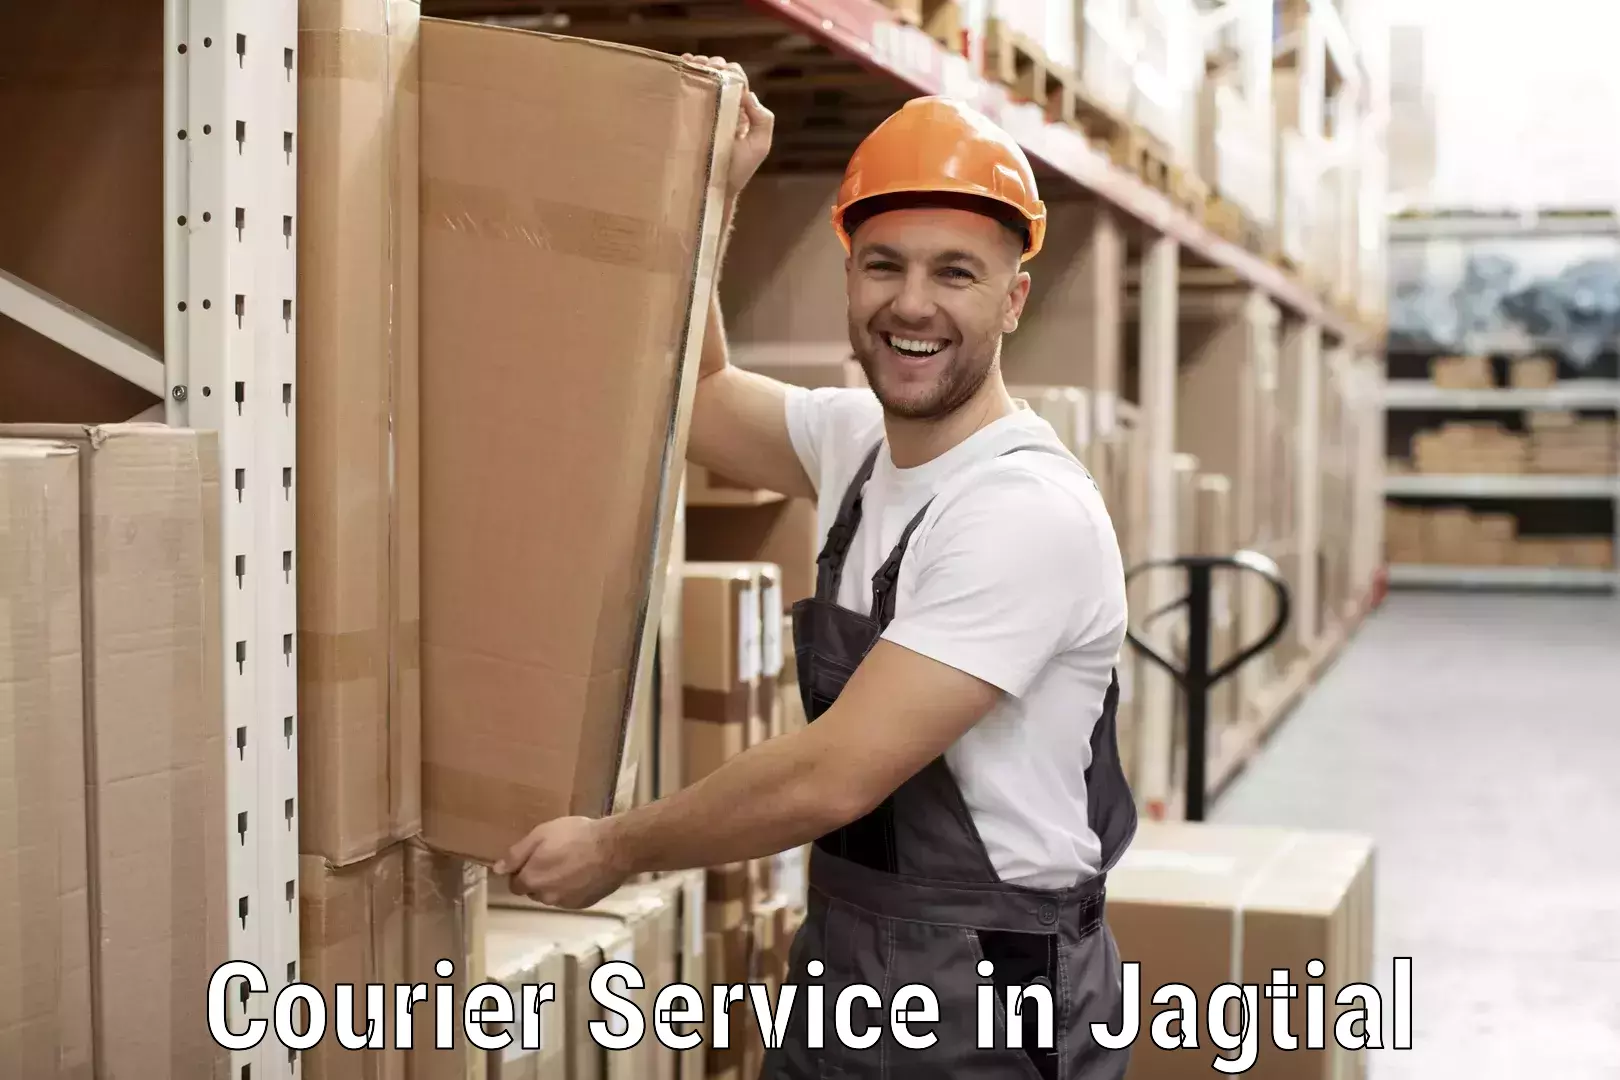 Express package handling in Jagtial